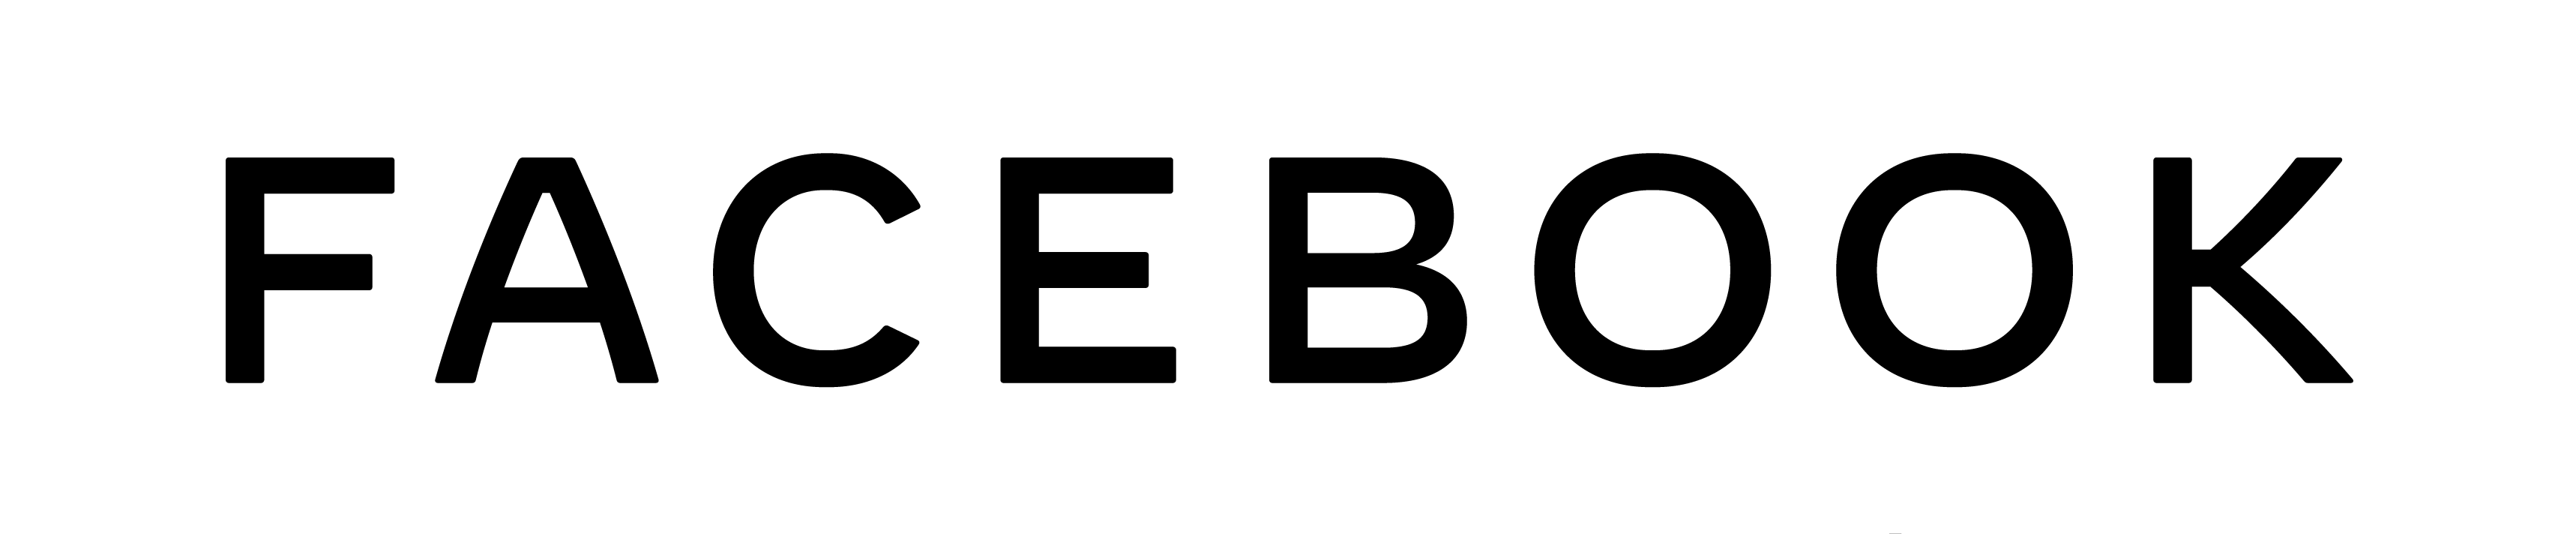 Logotipo da empresa Facebook. O nome “Facebook” está escrito na cor preta. Logotipo